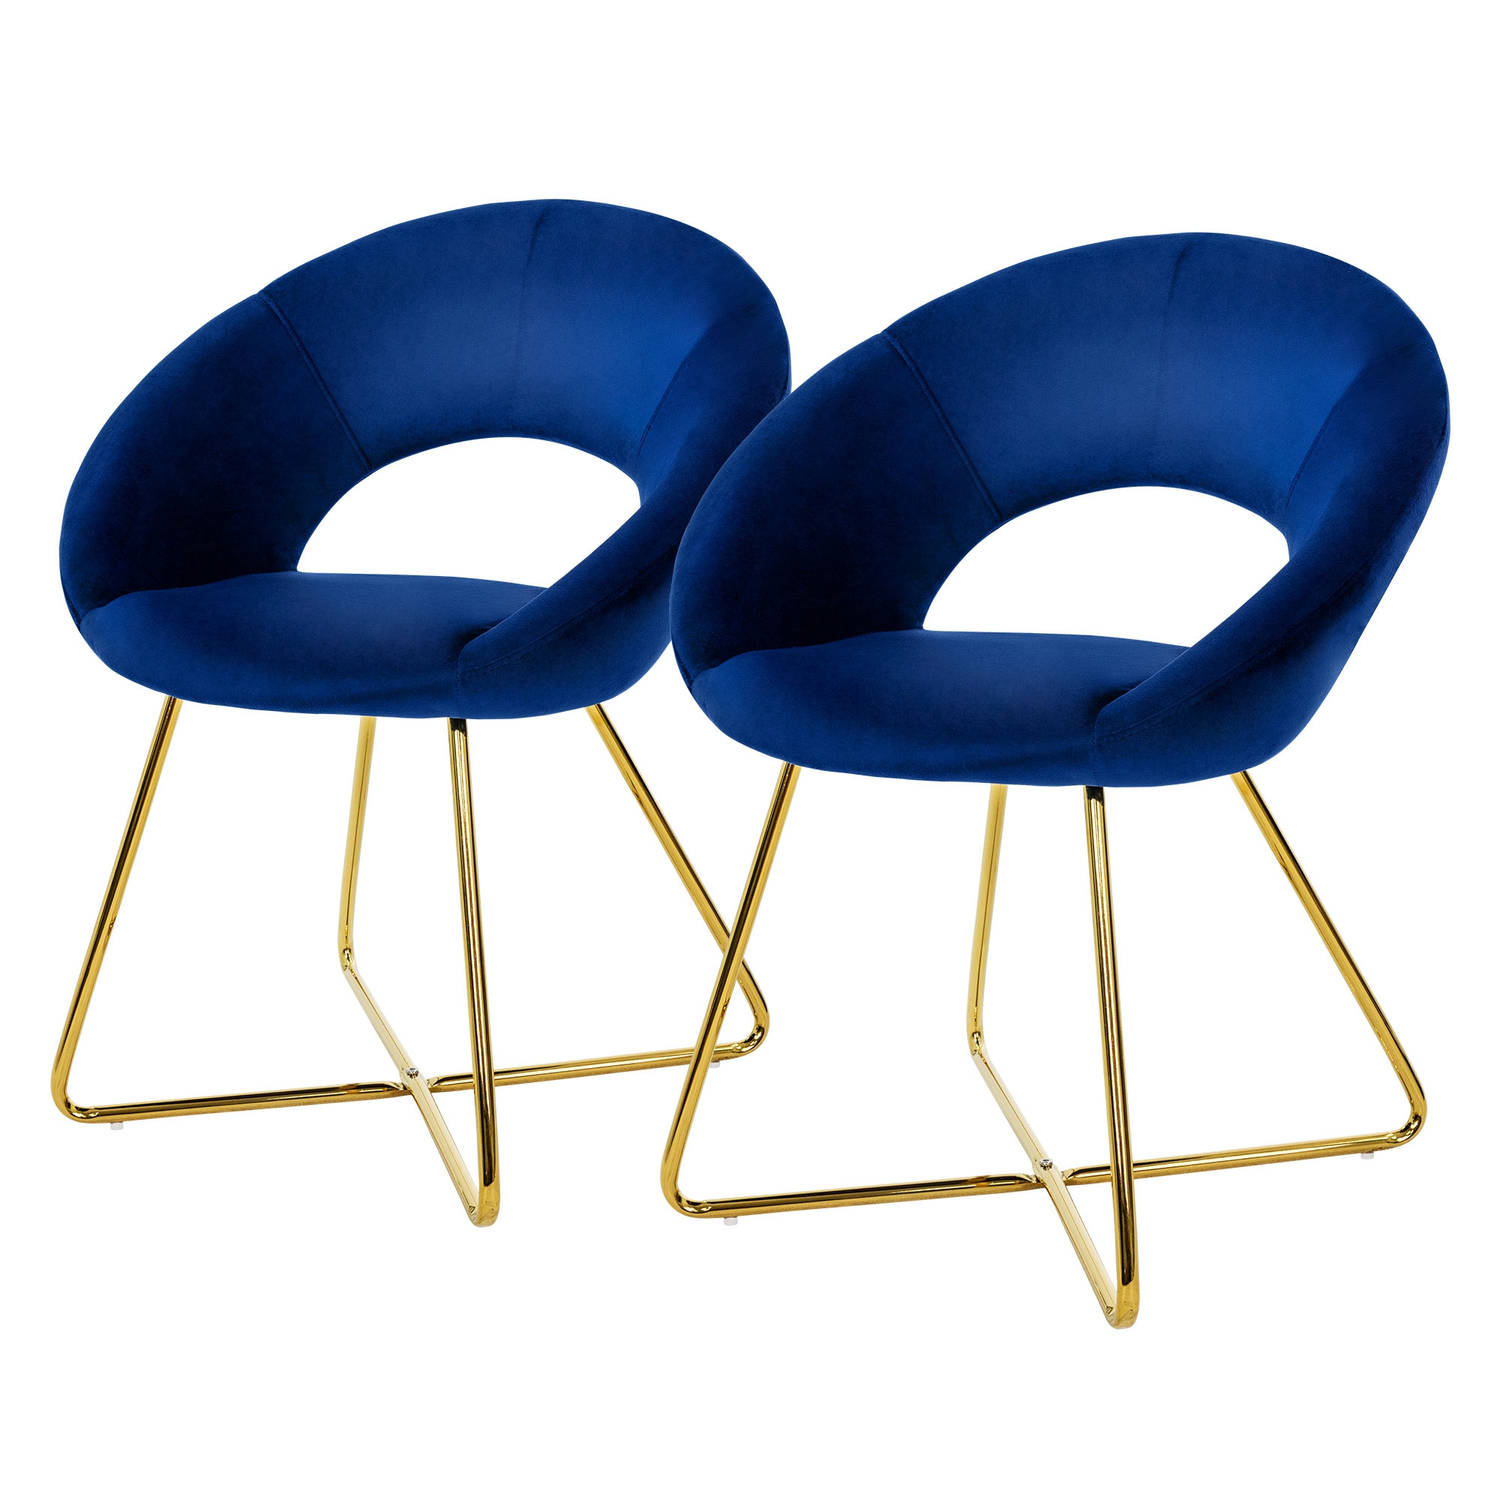 ML-Design eetkamerstoelen set van 2 blauw fluweel, woonkamerstoel met ronde rugleuning gestoffeerde met goudkleurige metalen poten, ergonomische eettafel fauteuil keukenstoel kuips